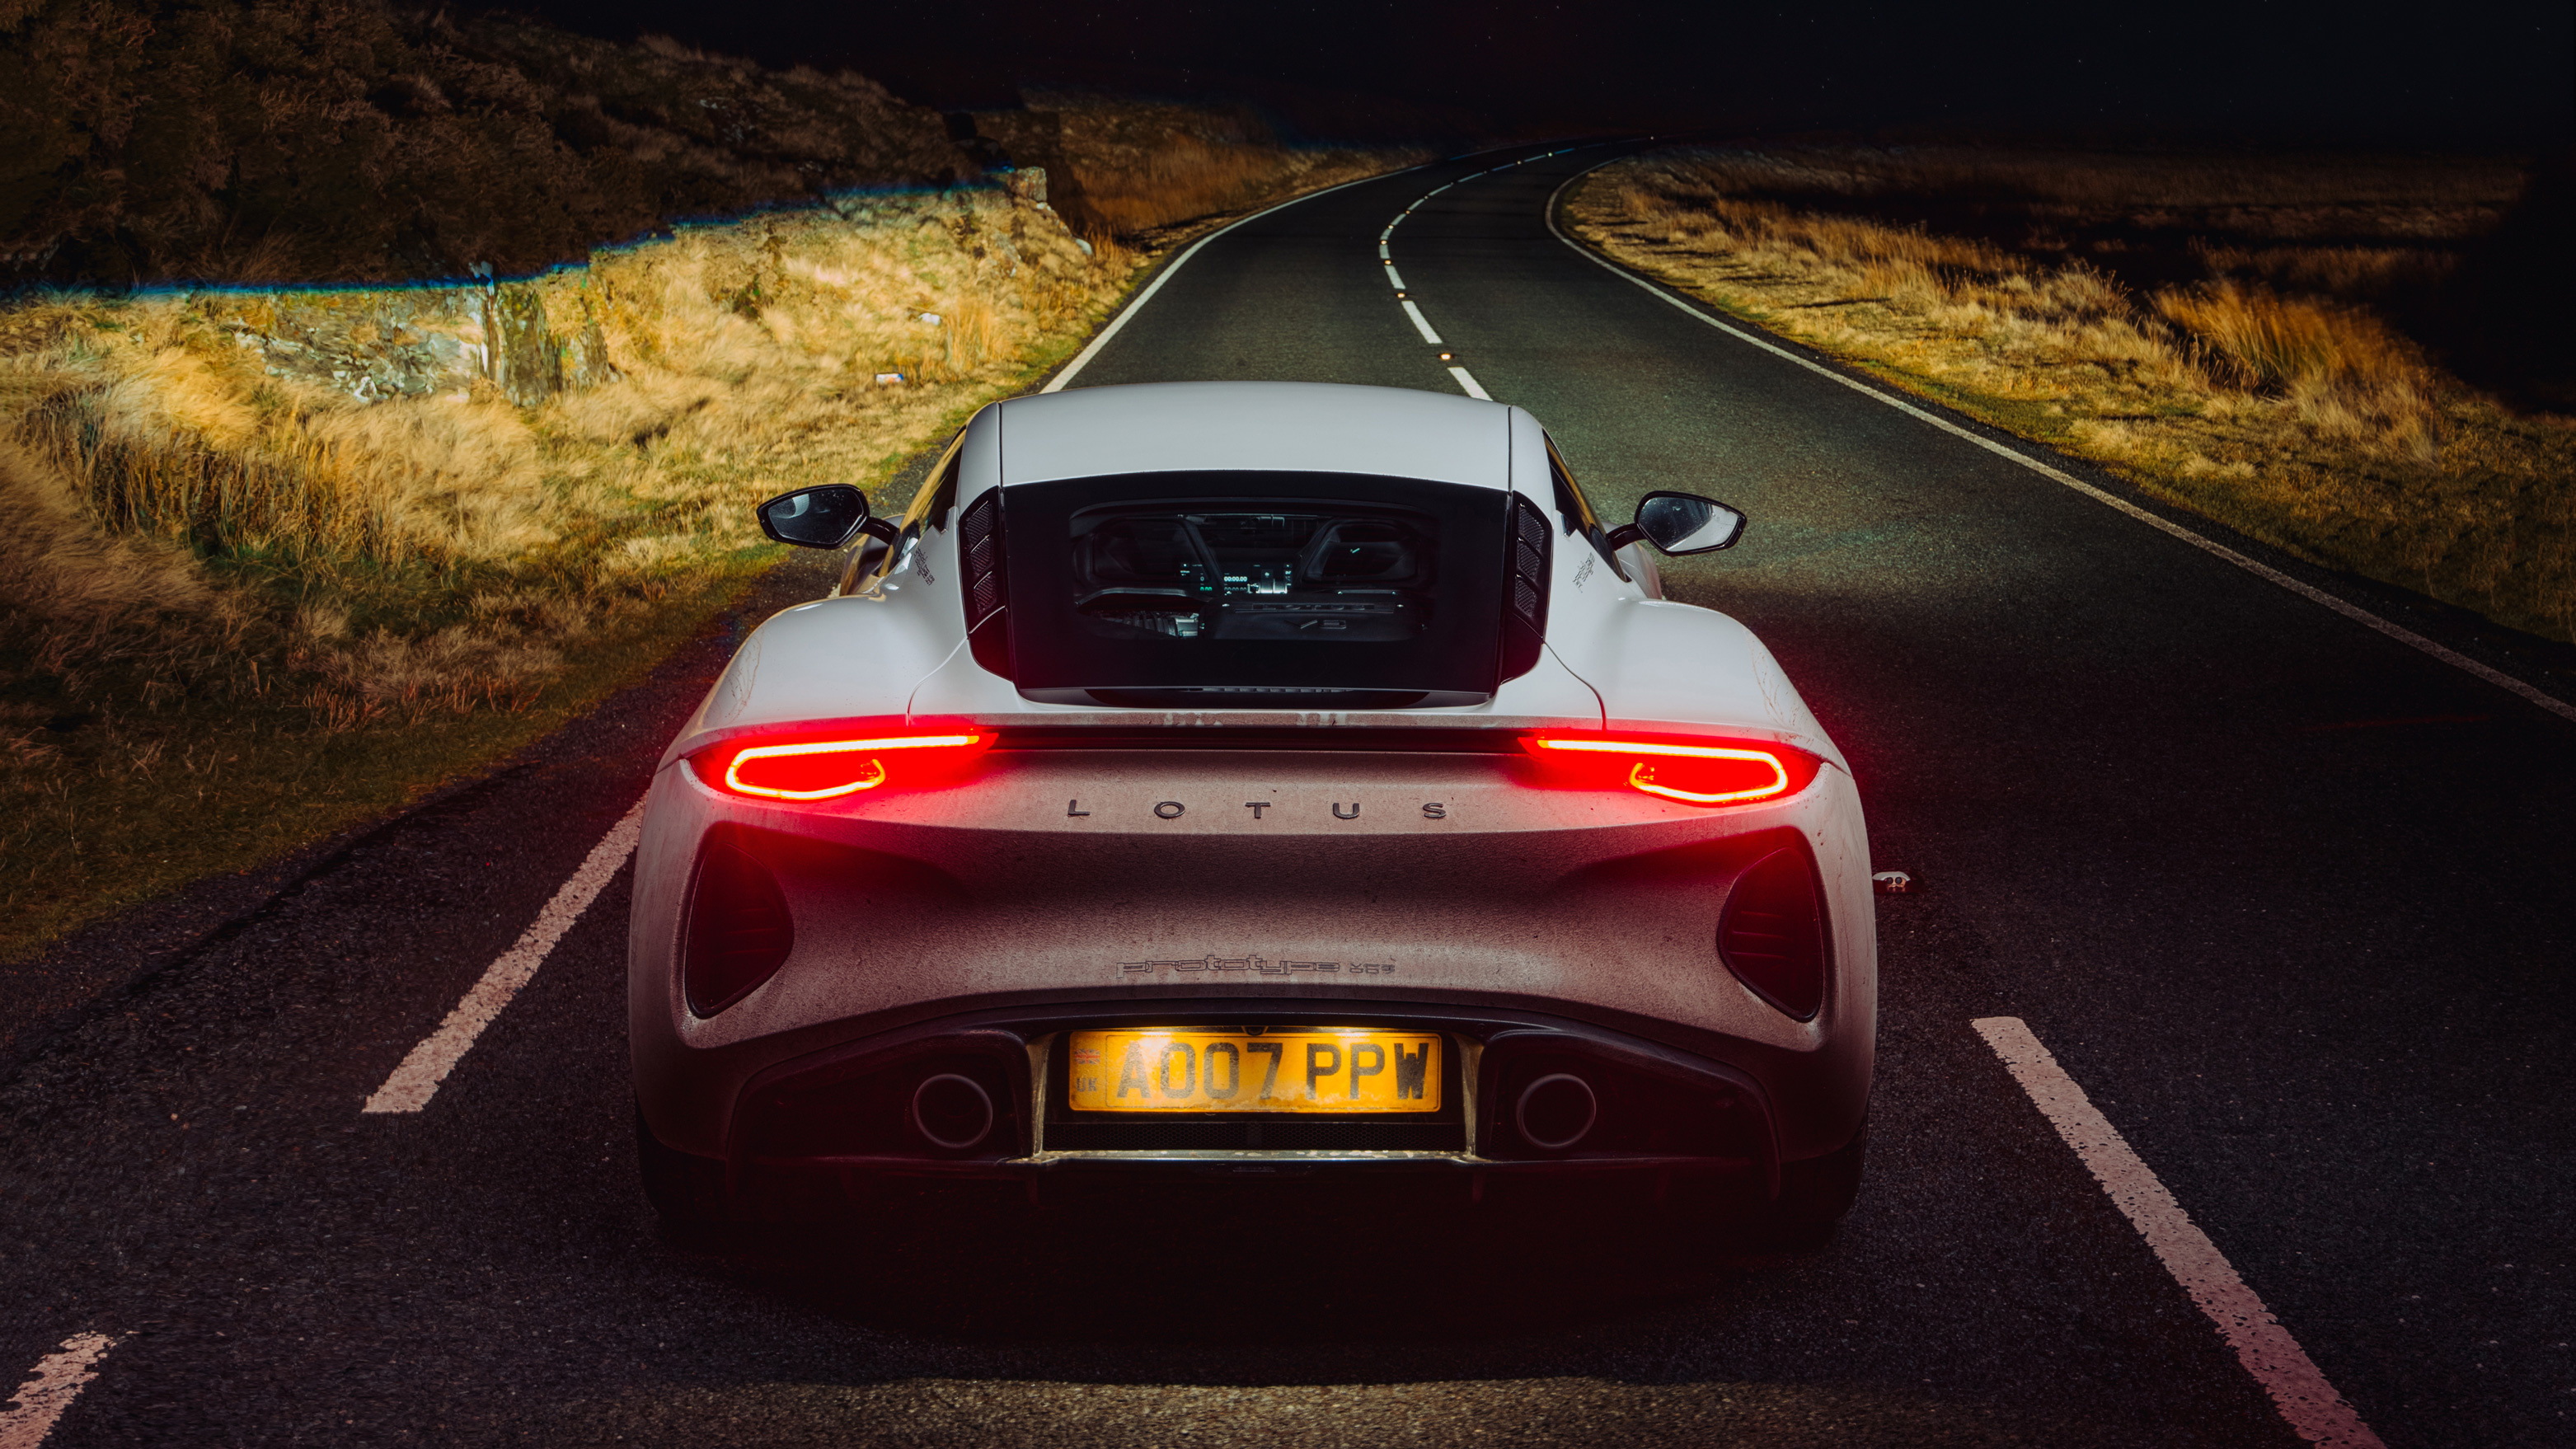 Lotus Emira, Exclusive road test, First prototype, Top Gear, 3130x1760 HD Desktop